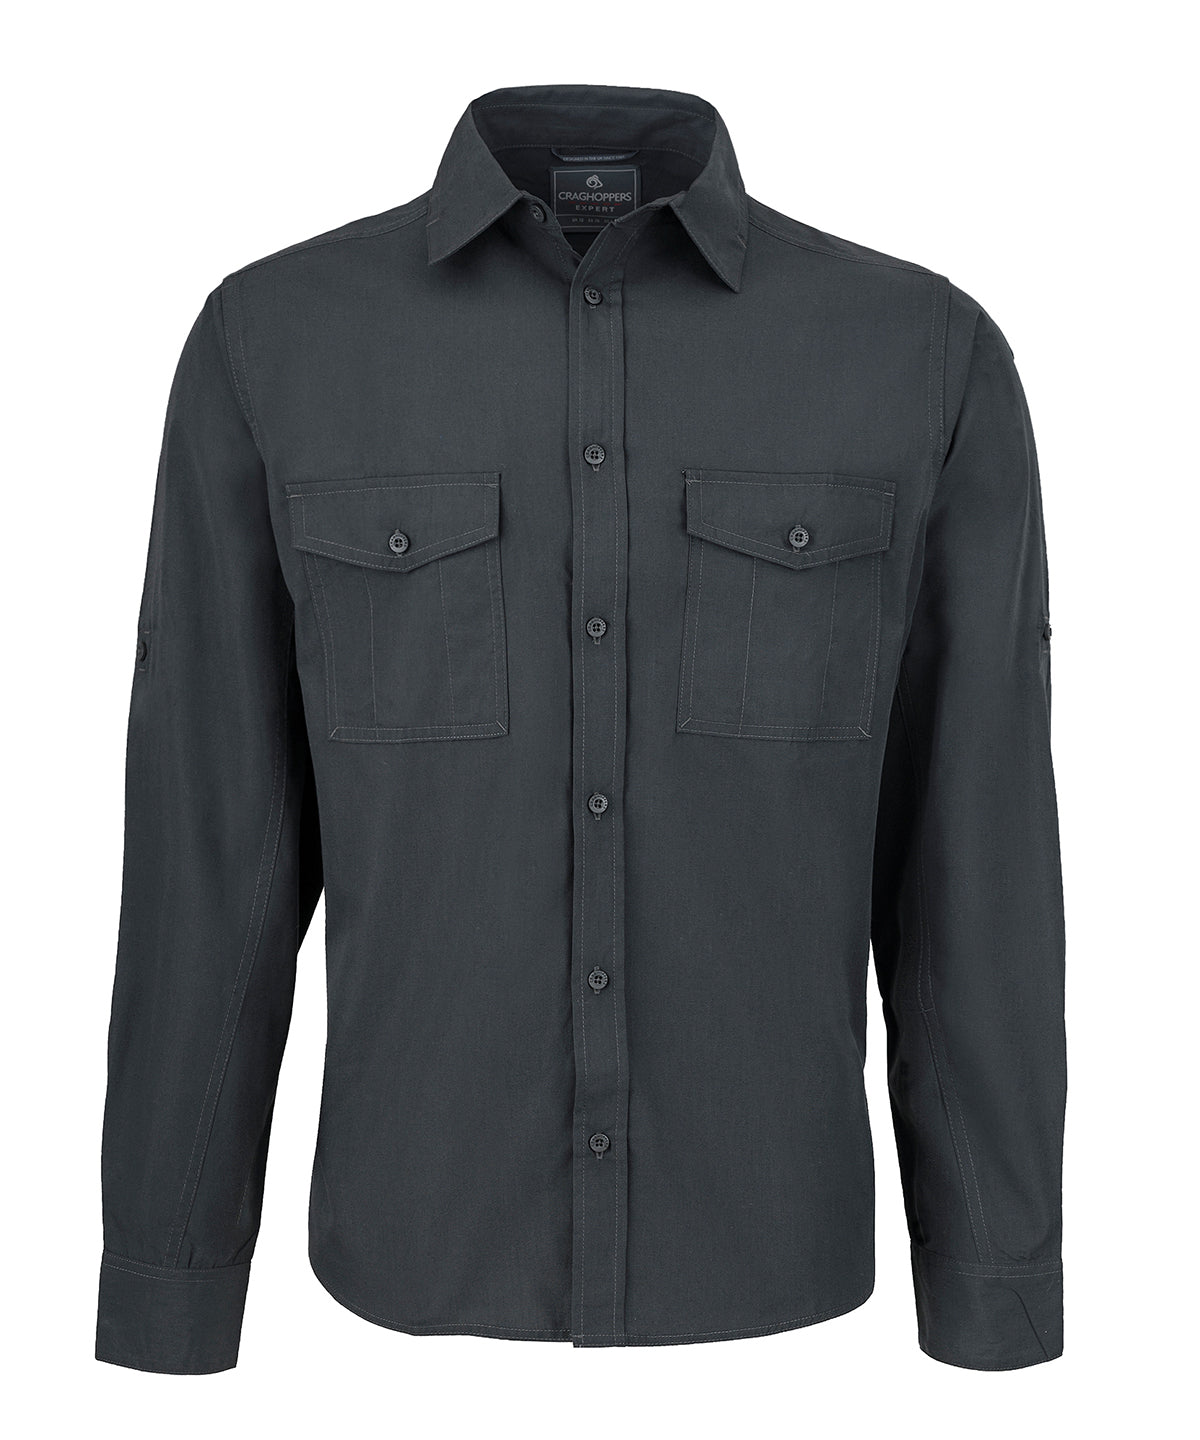 Bolir - Expert Kiwi Long-sleeved Shirt